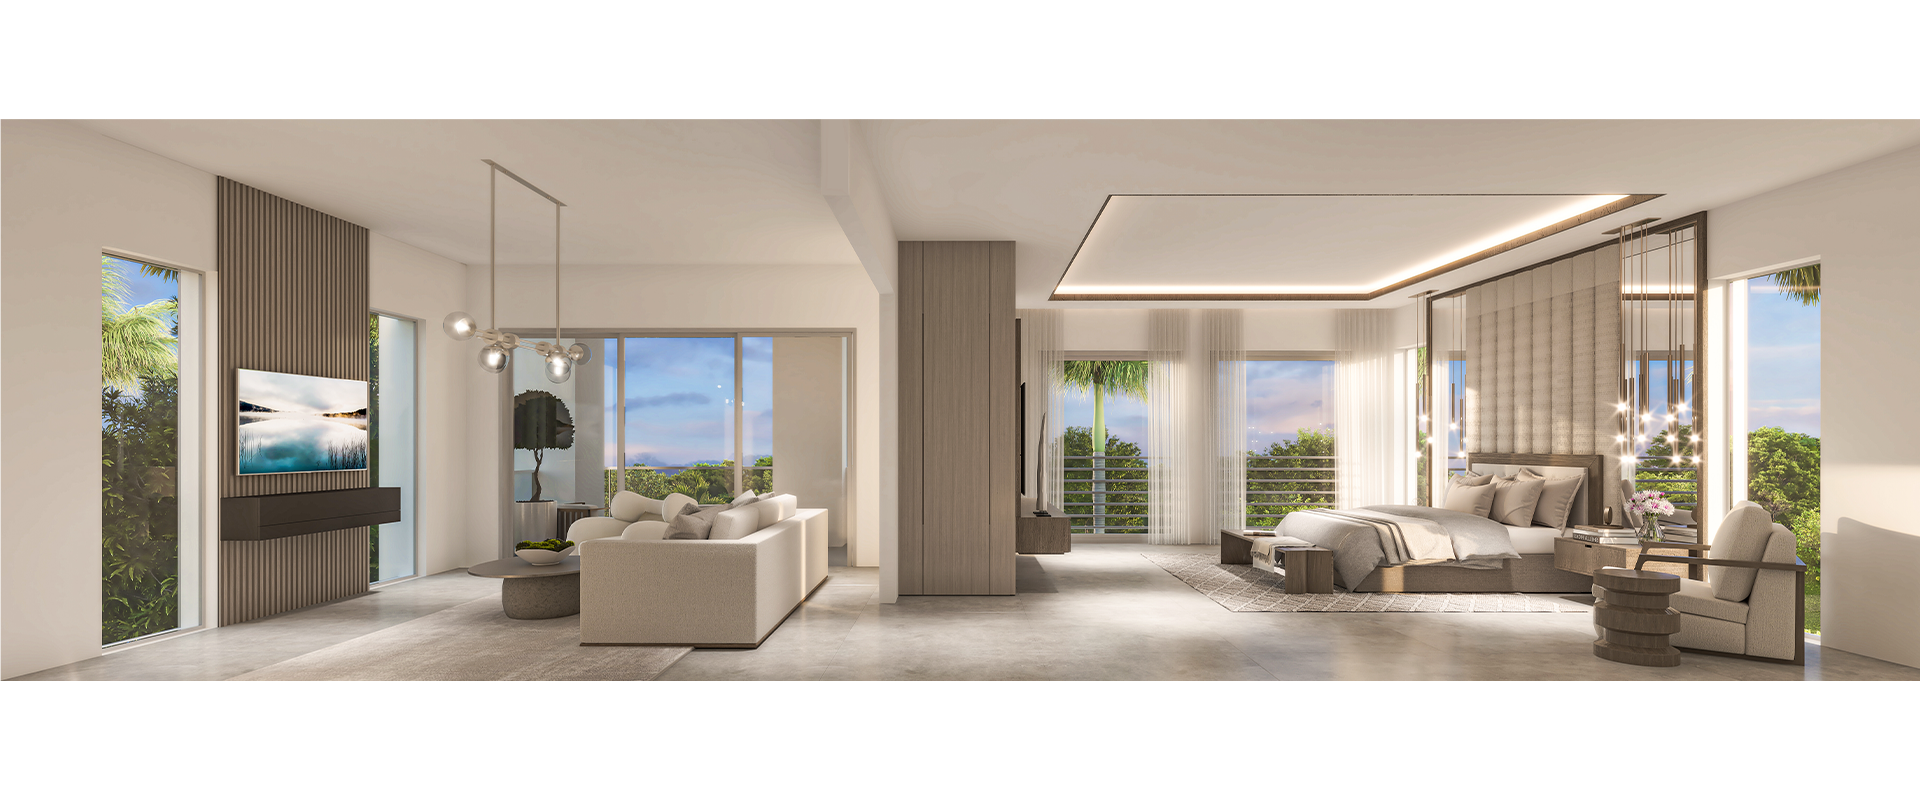 Villa Residence - Bedroom/Living Room